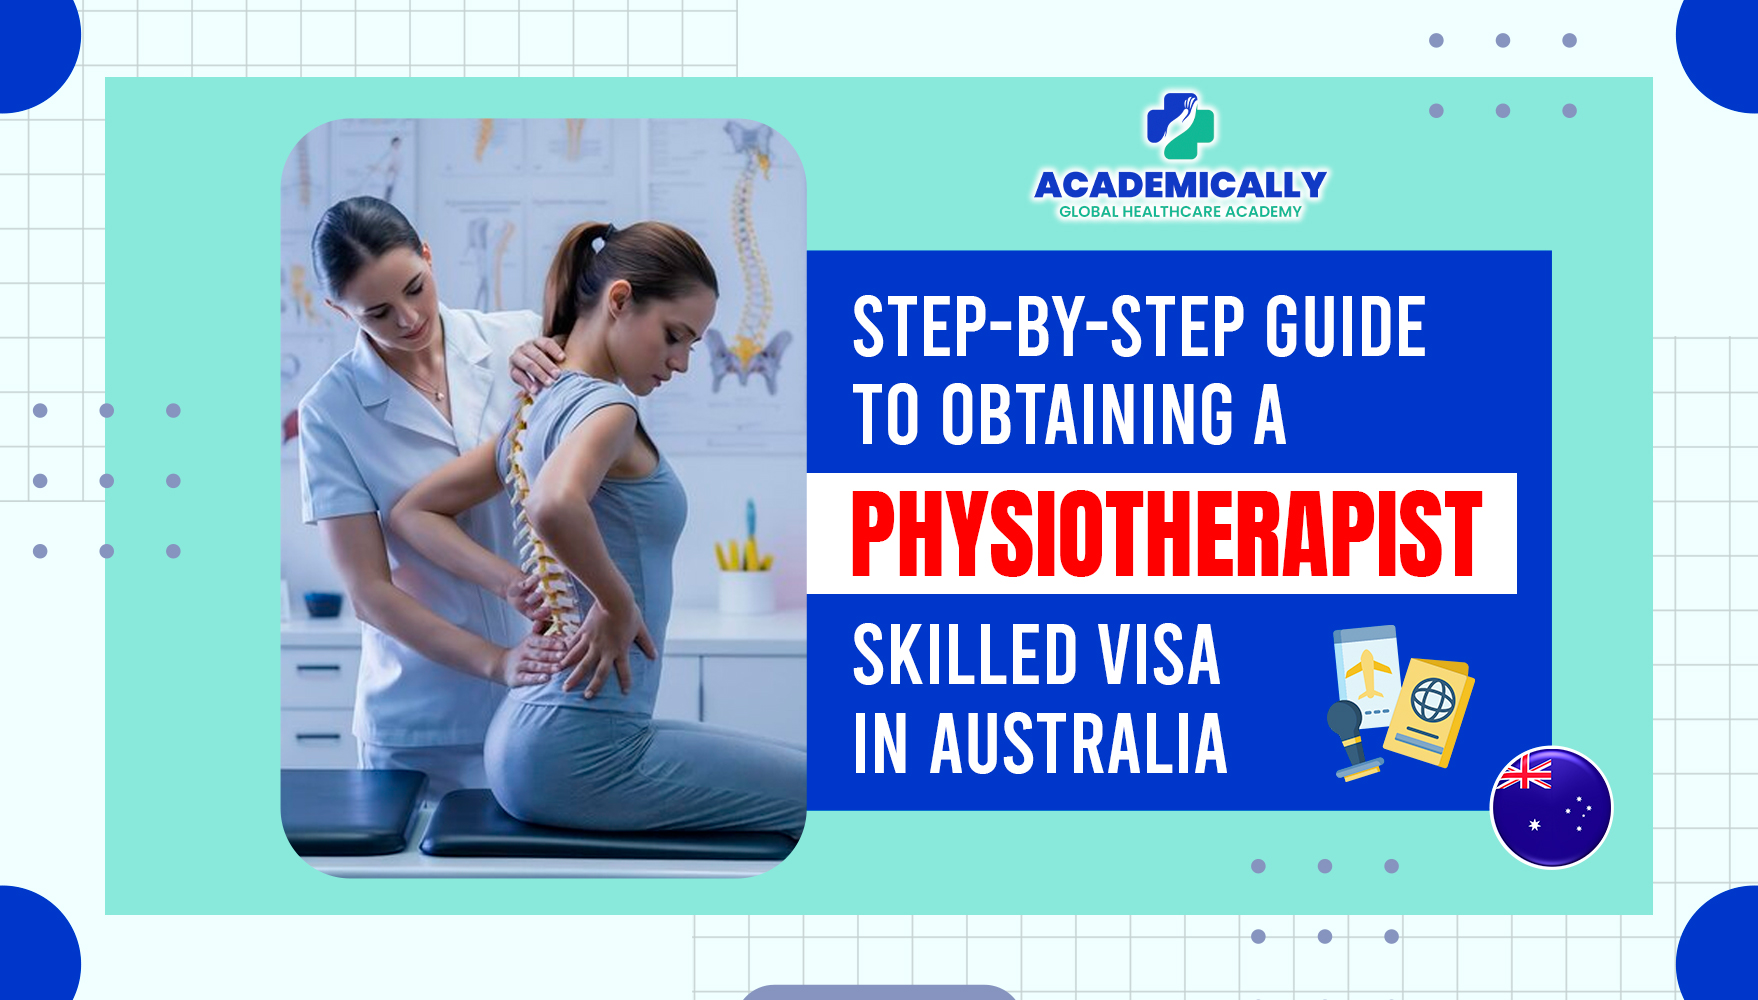 Visa as Physiotherapist in Australia